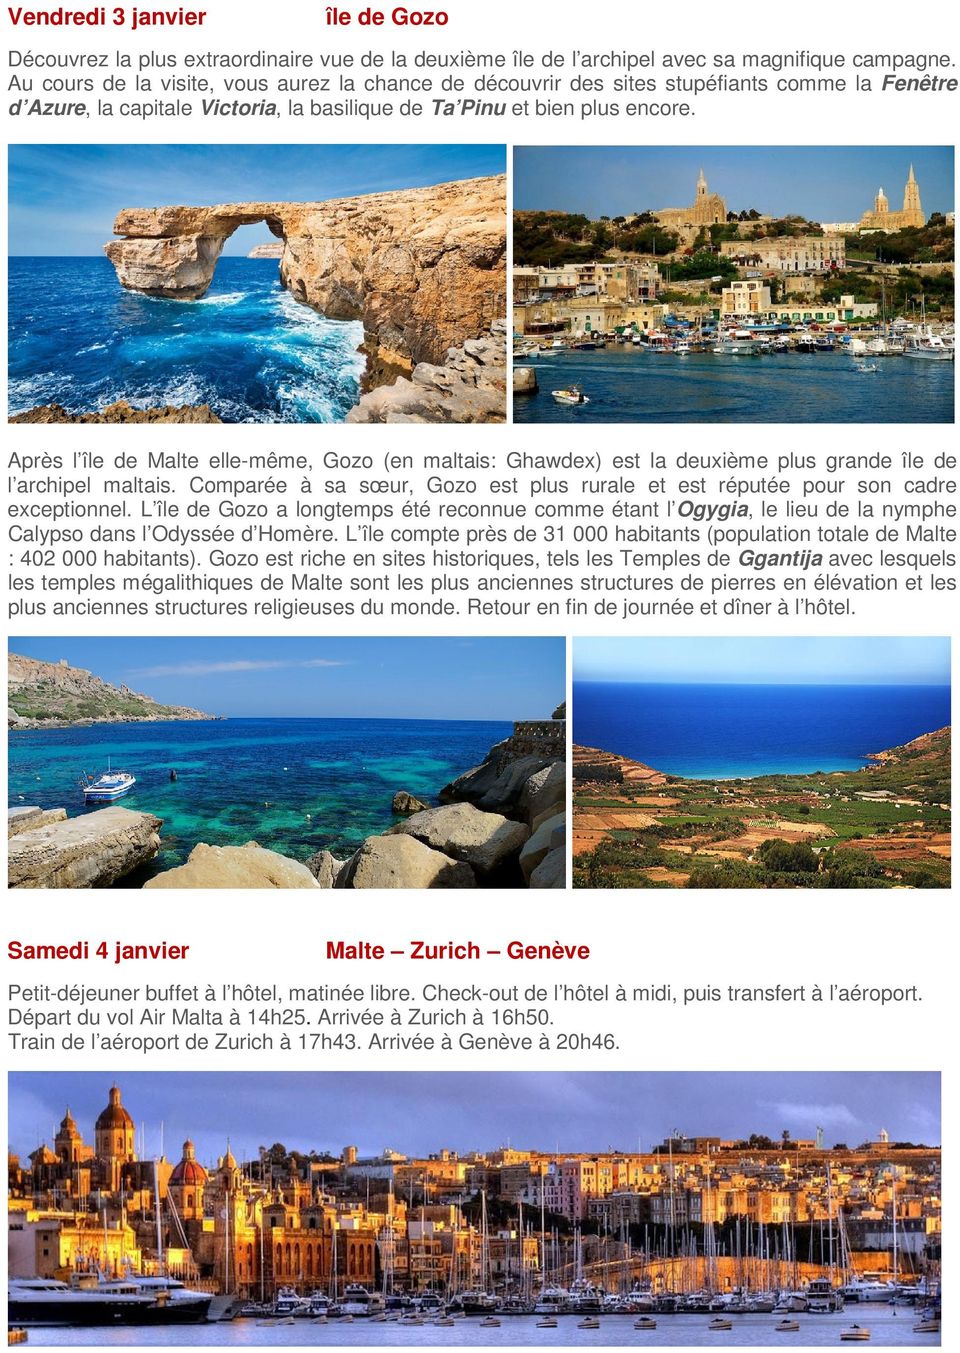 Après l île de Malte elle-même, Gozo (en maltais: Ghawdex) est la deuxième plus grande île de l archipel maltais. Comparée à sa sœur, Gozo est plus rurale et est réputée pour son cadre exceptionnel.